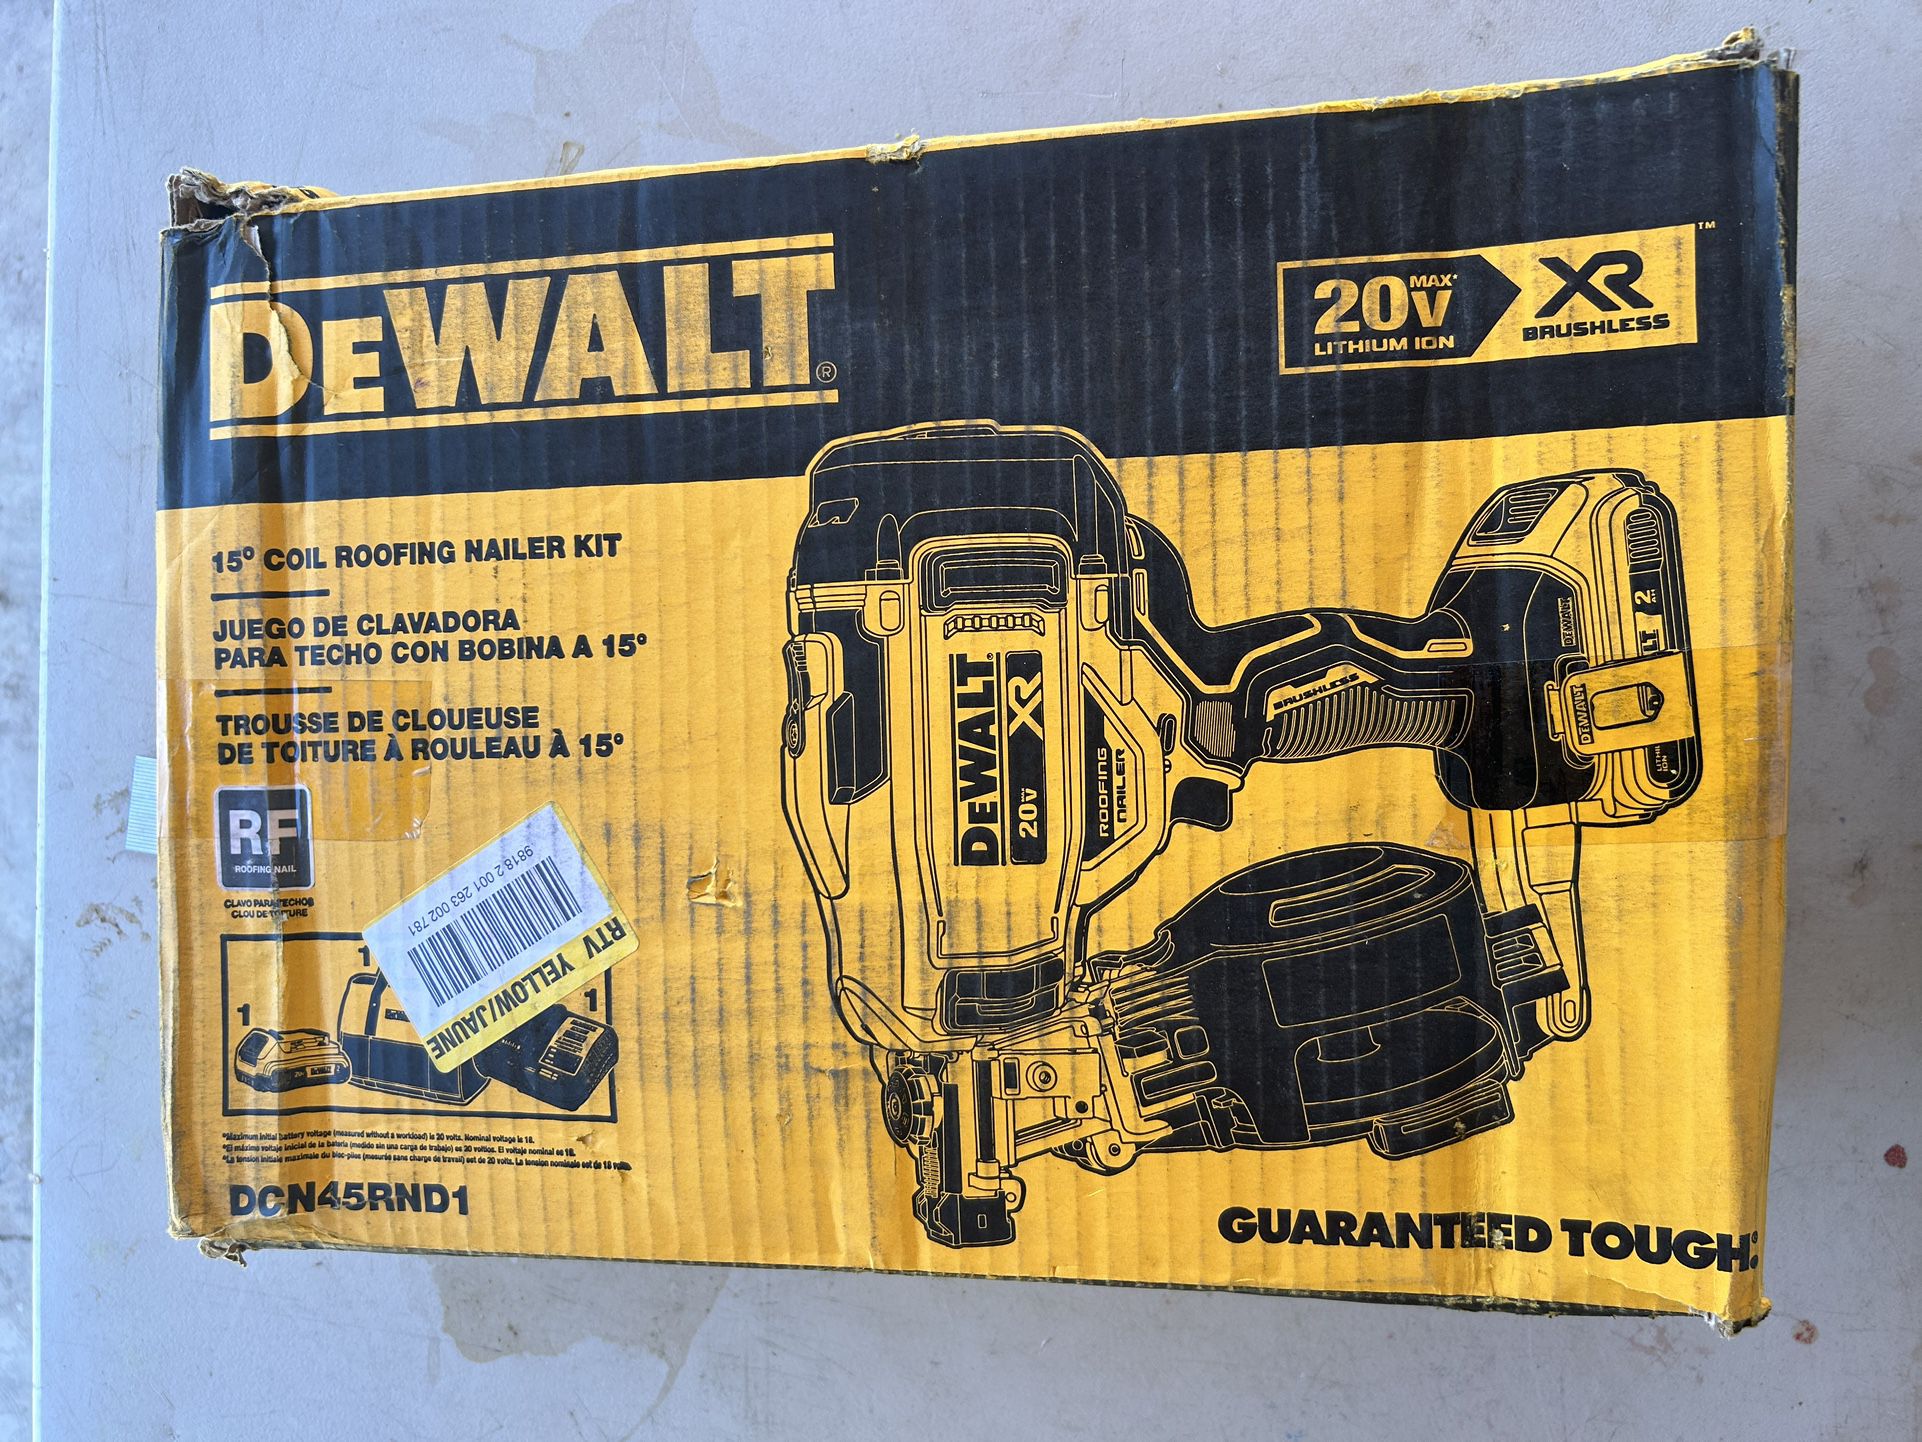 Coil Roofing Nailer Kit DEWALT 